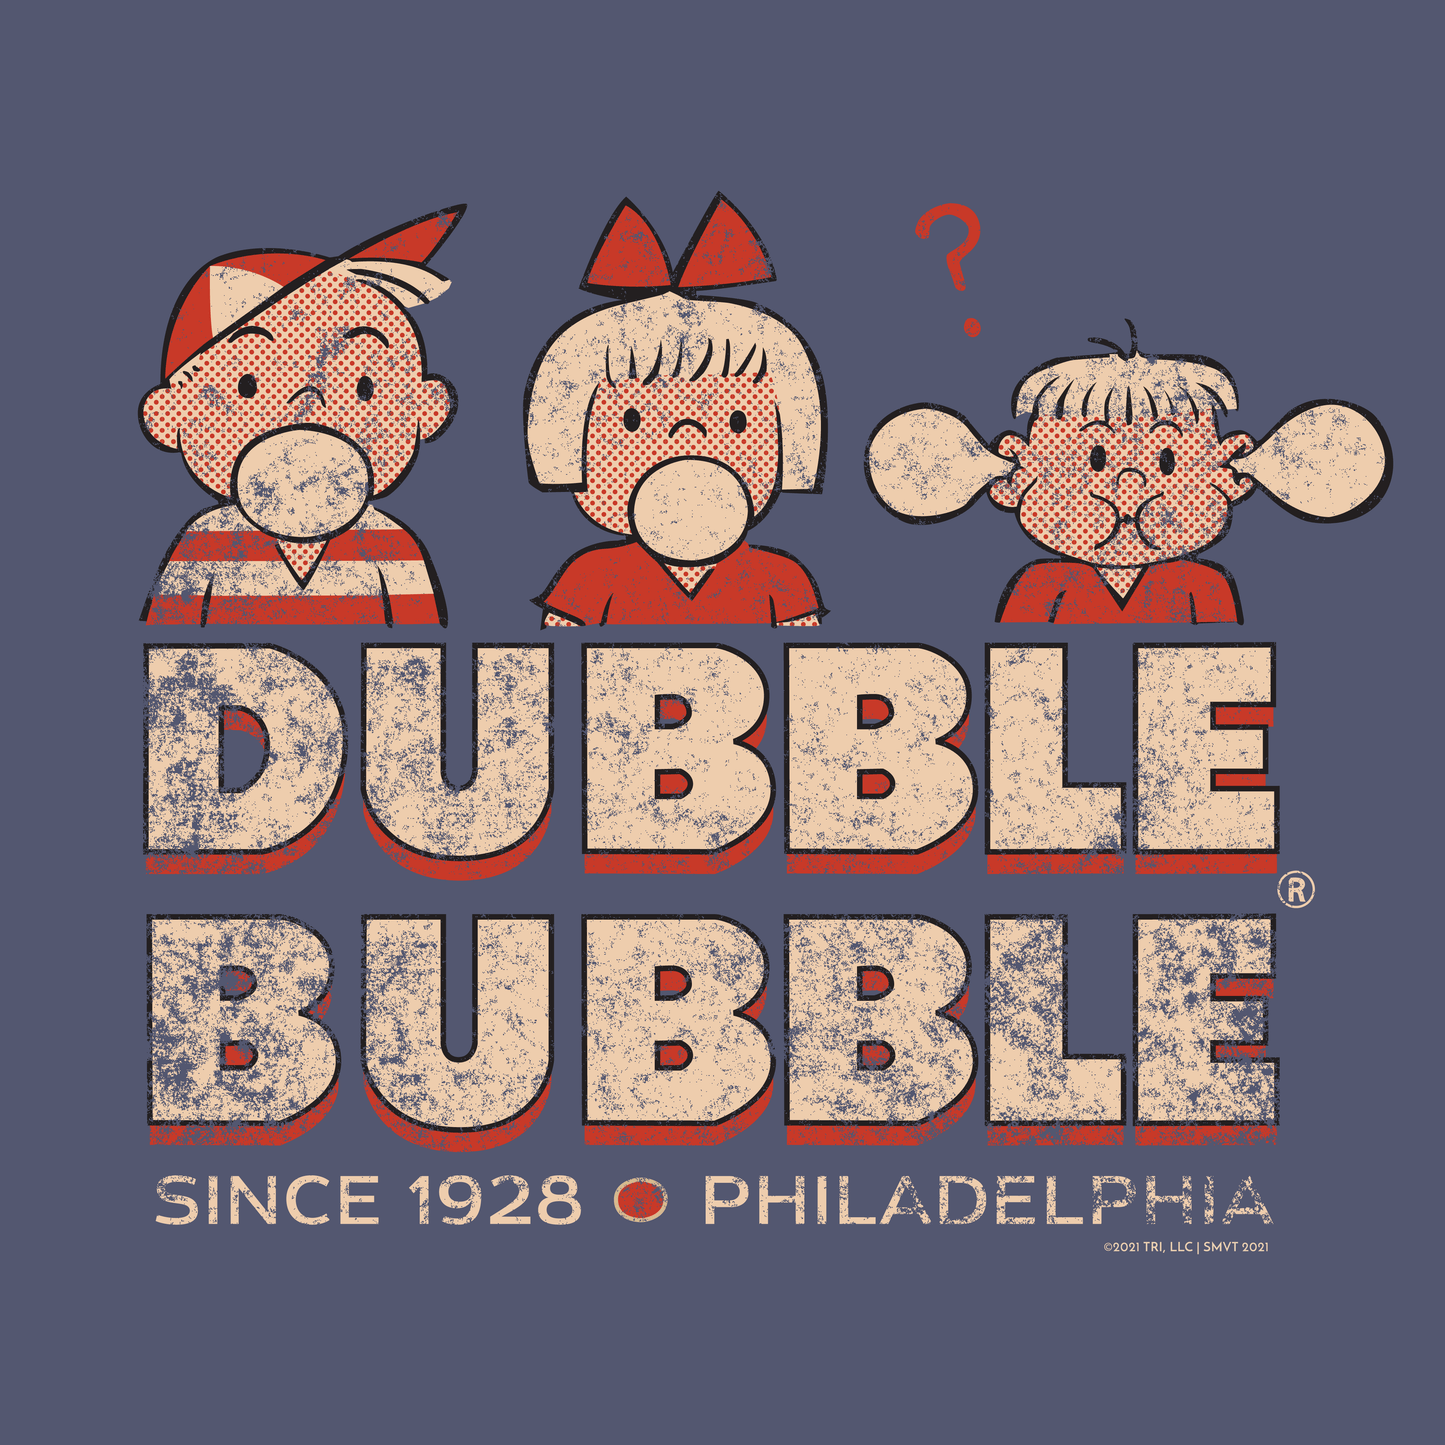 Retro Dubble Bubble Tee | Vintage Bubble Gum Tshirt